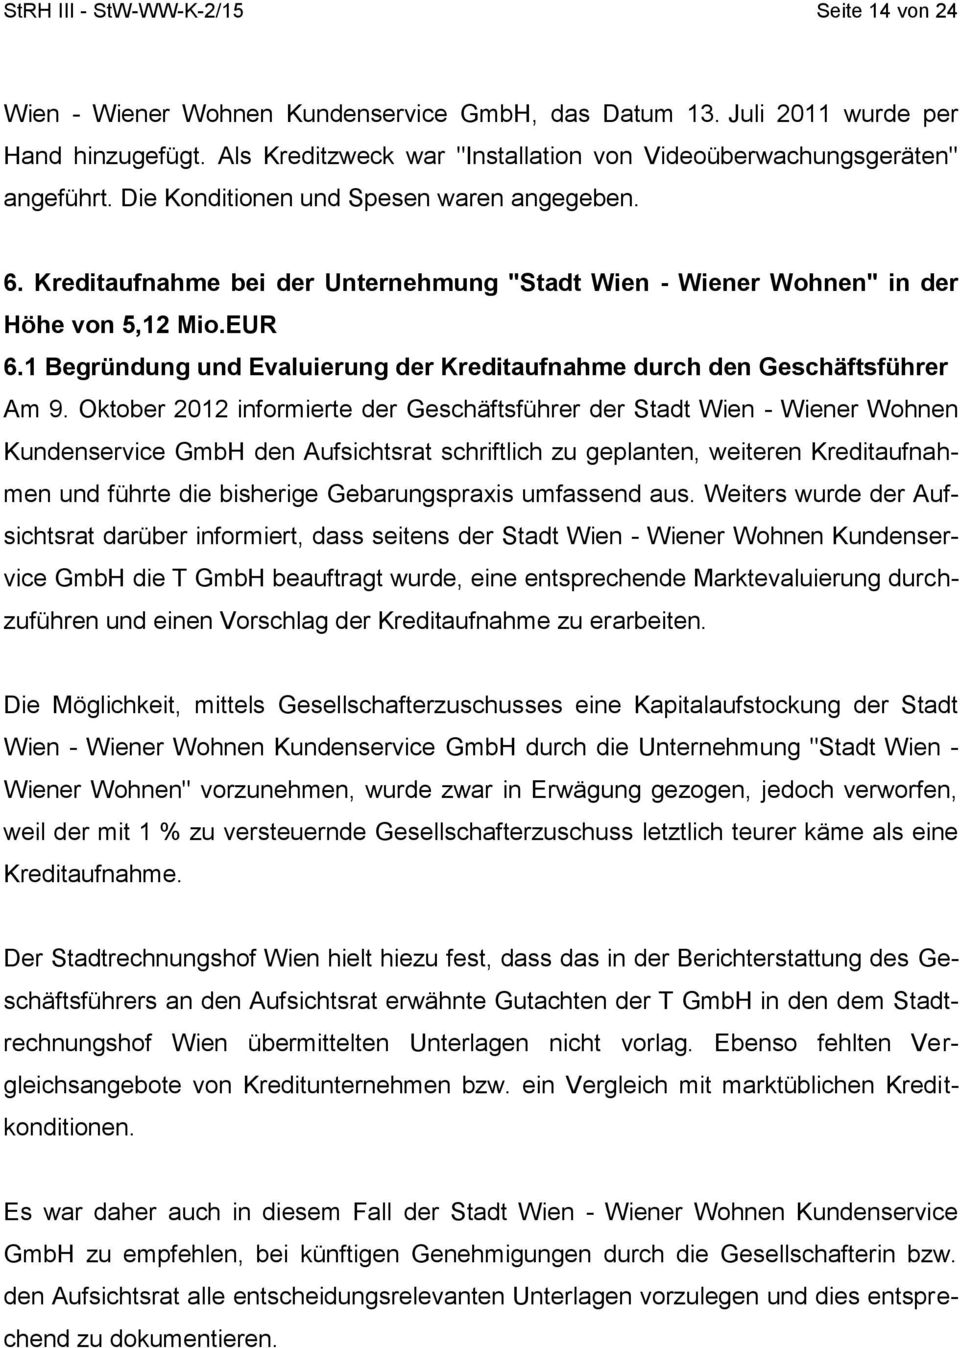 Kreditaufnahme bei der Unternehmung "Stadt Wien - Wiener Wohnen" in der Höhe von 5,12 Mio.EUR 6.1 Begründung und Evaluierung der Kreditaufnahme durch den Geschäftsführer Am 9.